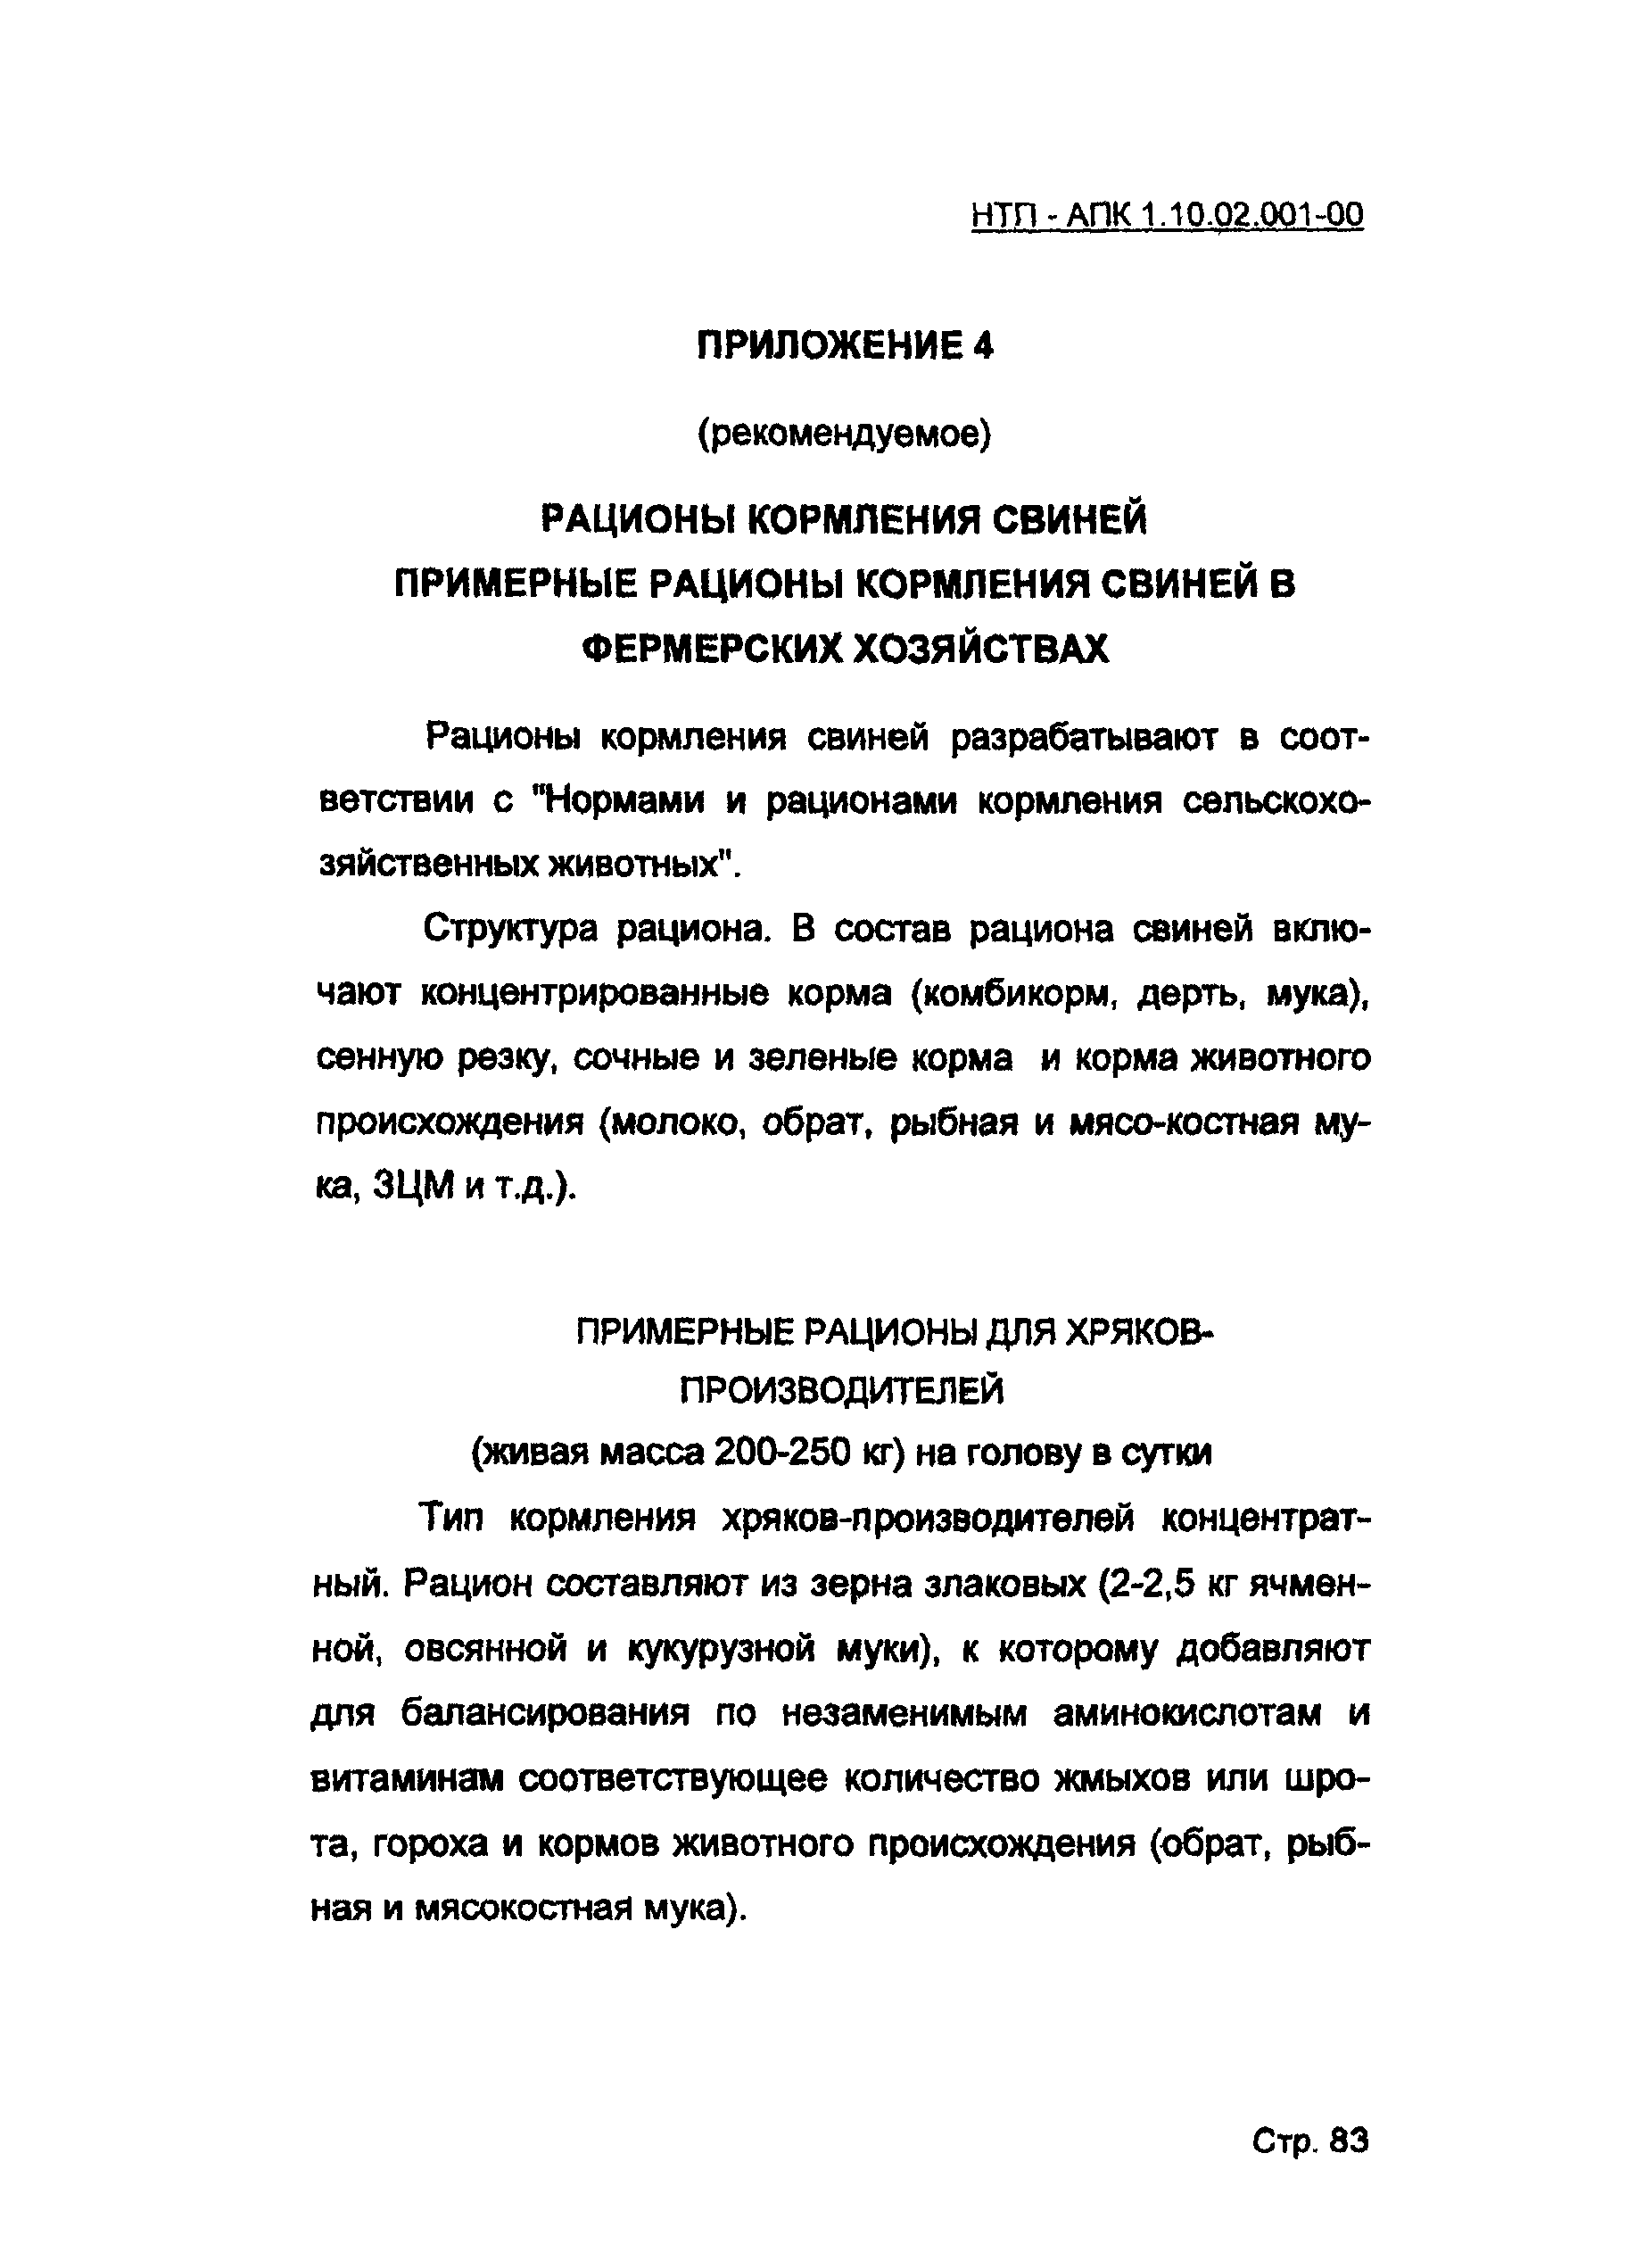 НТП-АПК 1.10.02.001-00